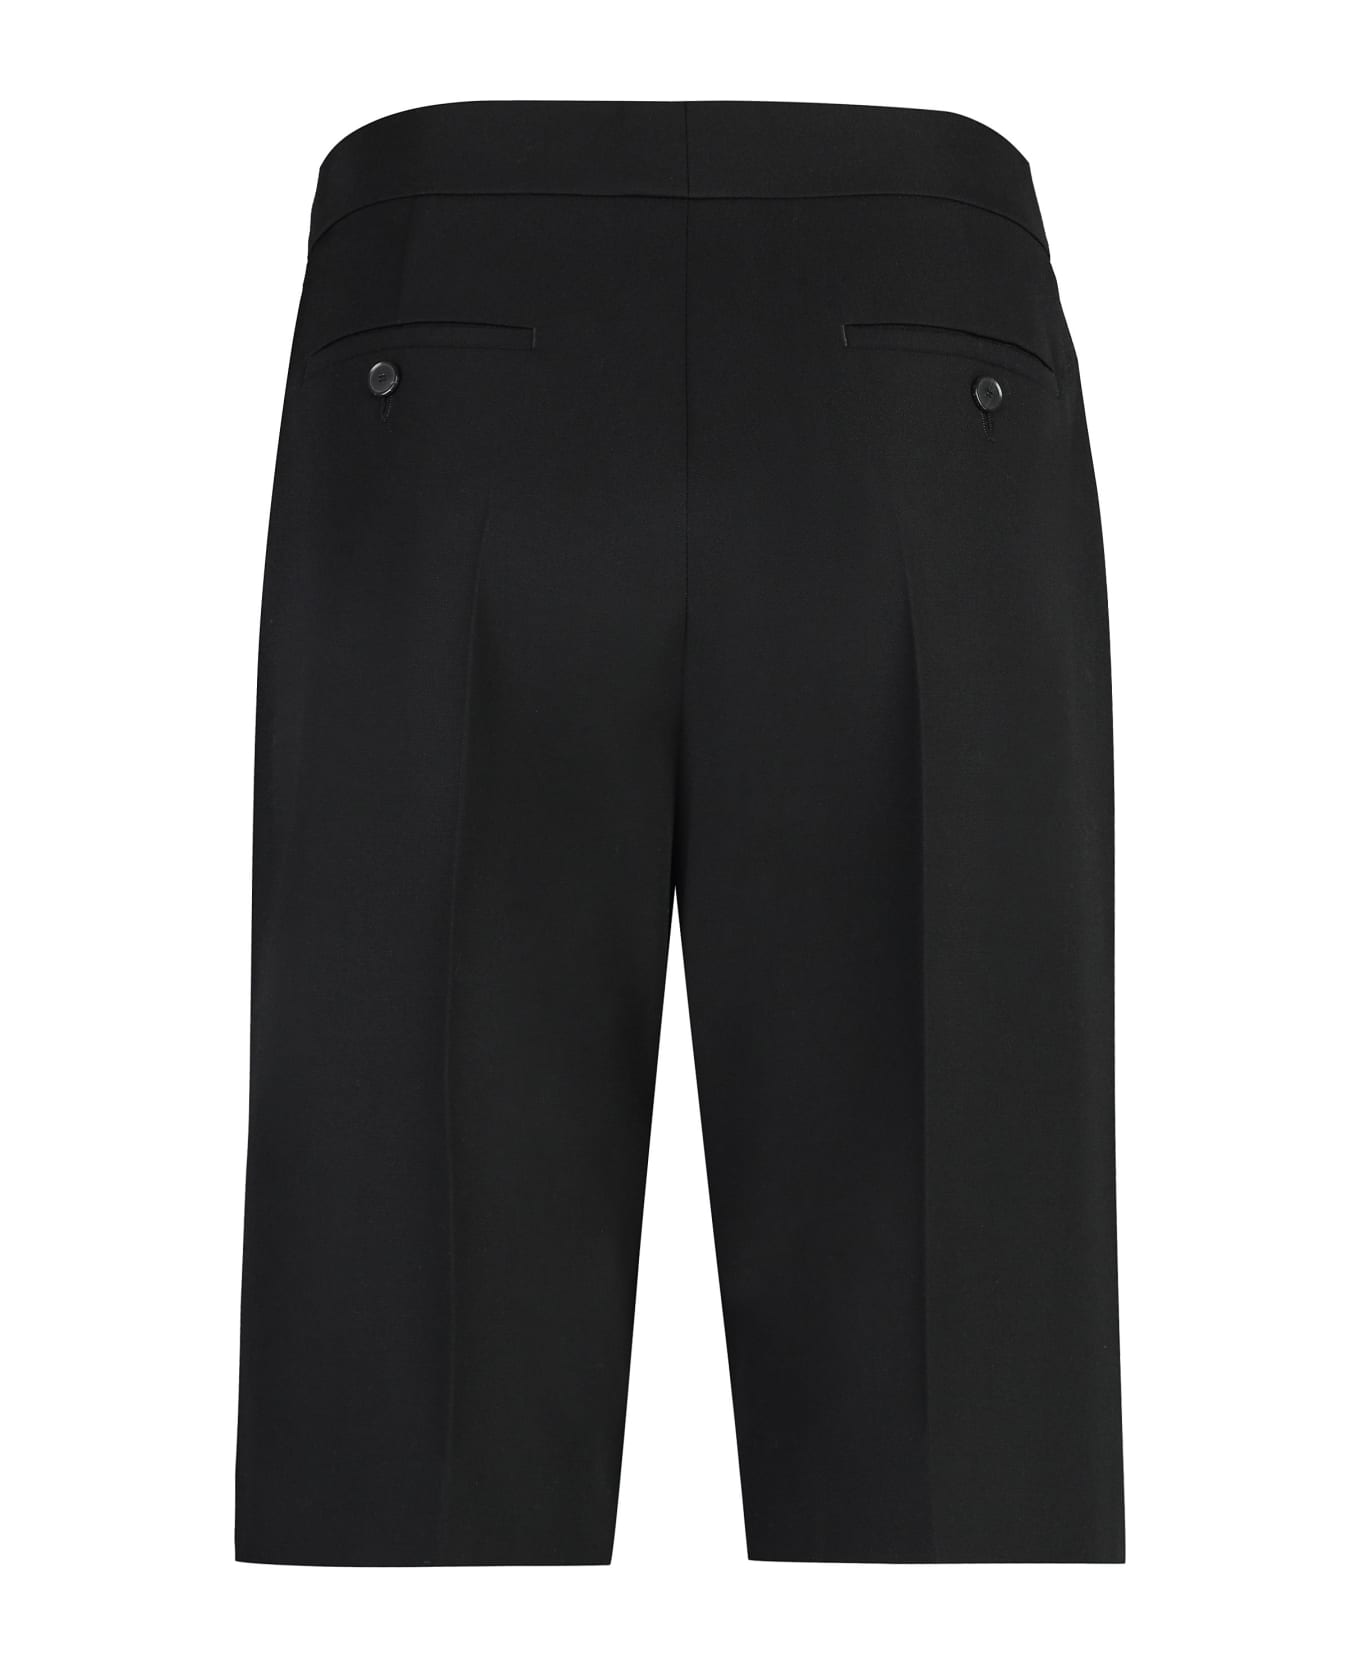 Givenchy Wool Shorts - black